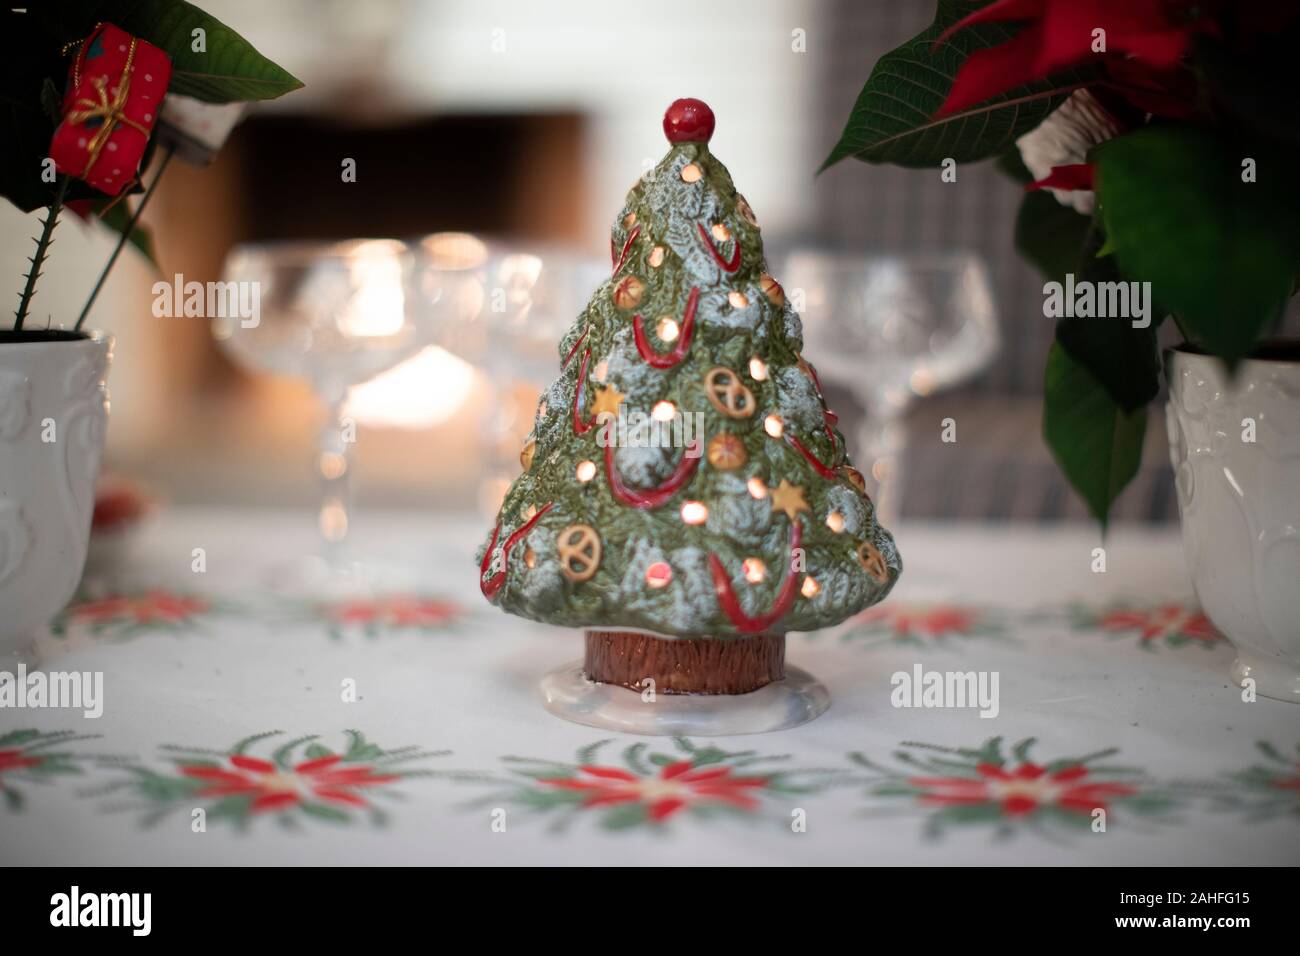 Weihnachtsfeier, Weihnachtsfeiertag, Christbaumschmuck, Weihnachtstradition Stockfoto